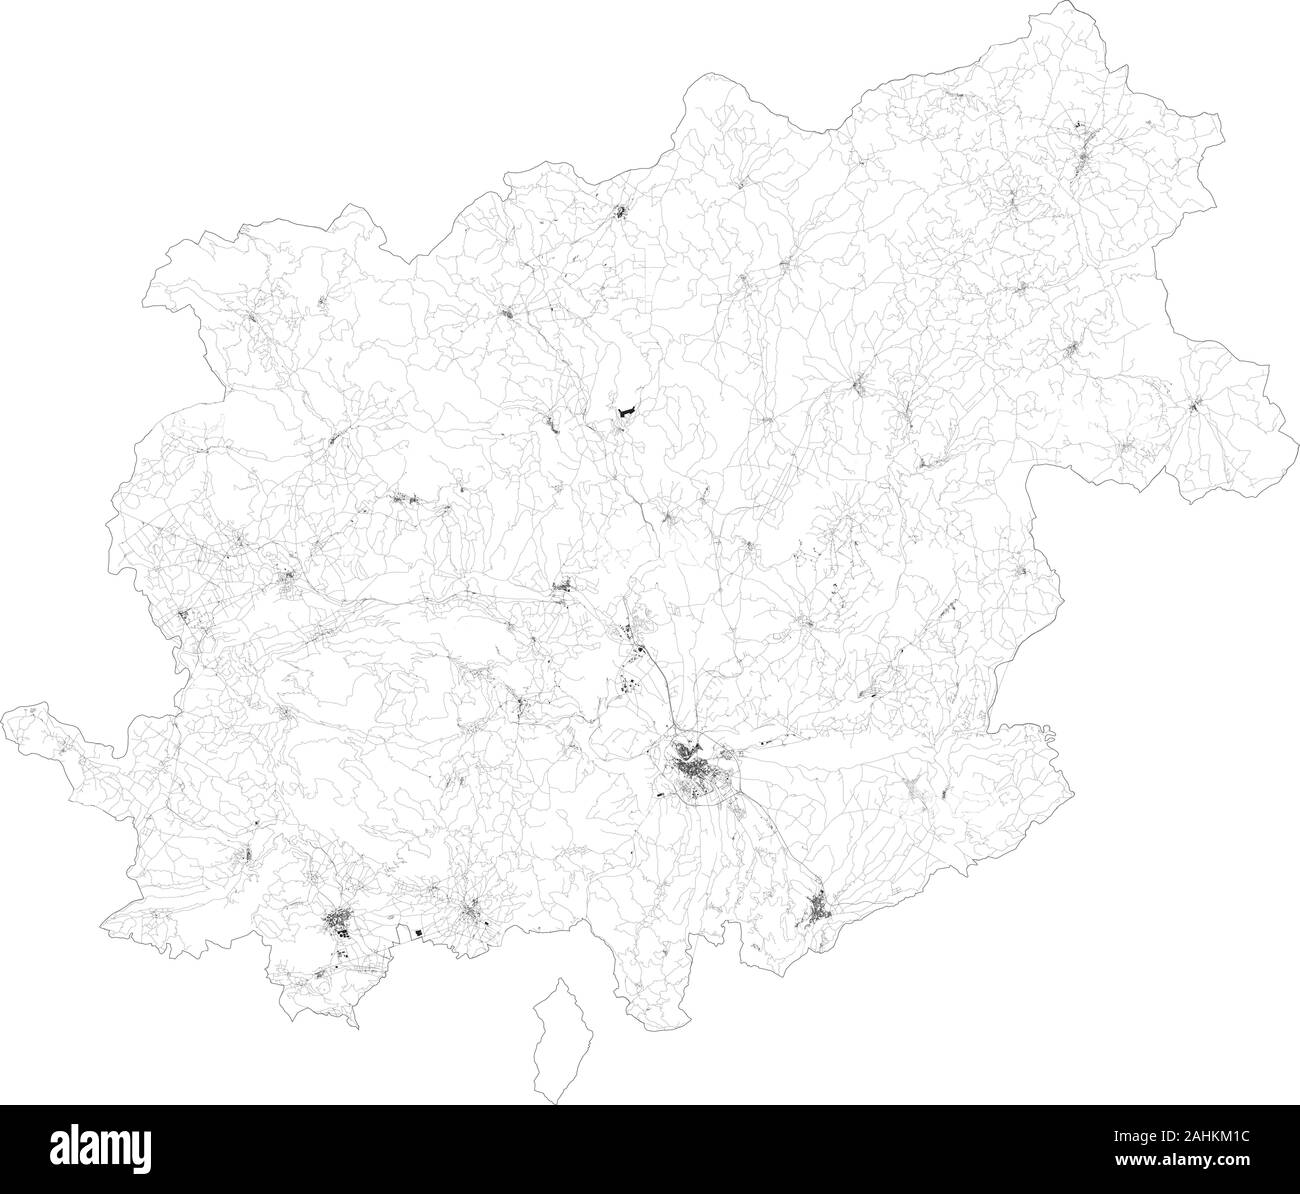 Sat-Karte der Provinz Benevento Städte und Straßen, Gebäude und Straßen der Umgebung. Region Kampanien, Italien. Karte Straßen Stock Vektor